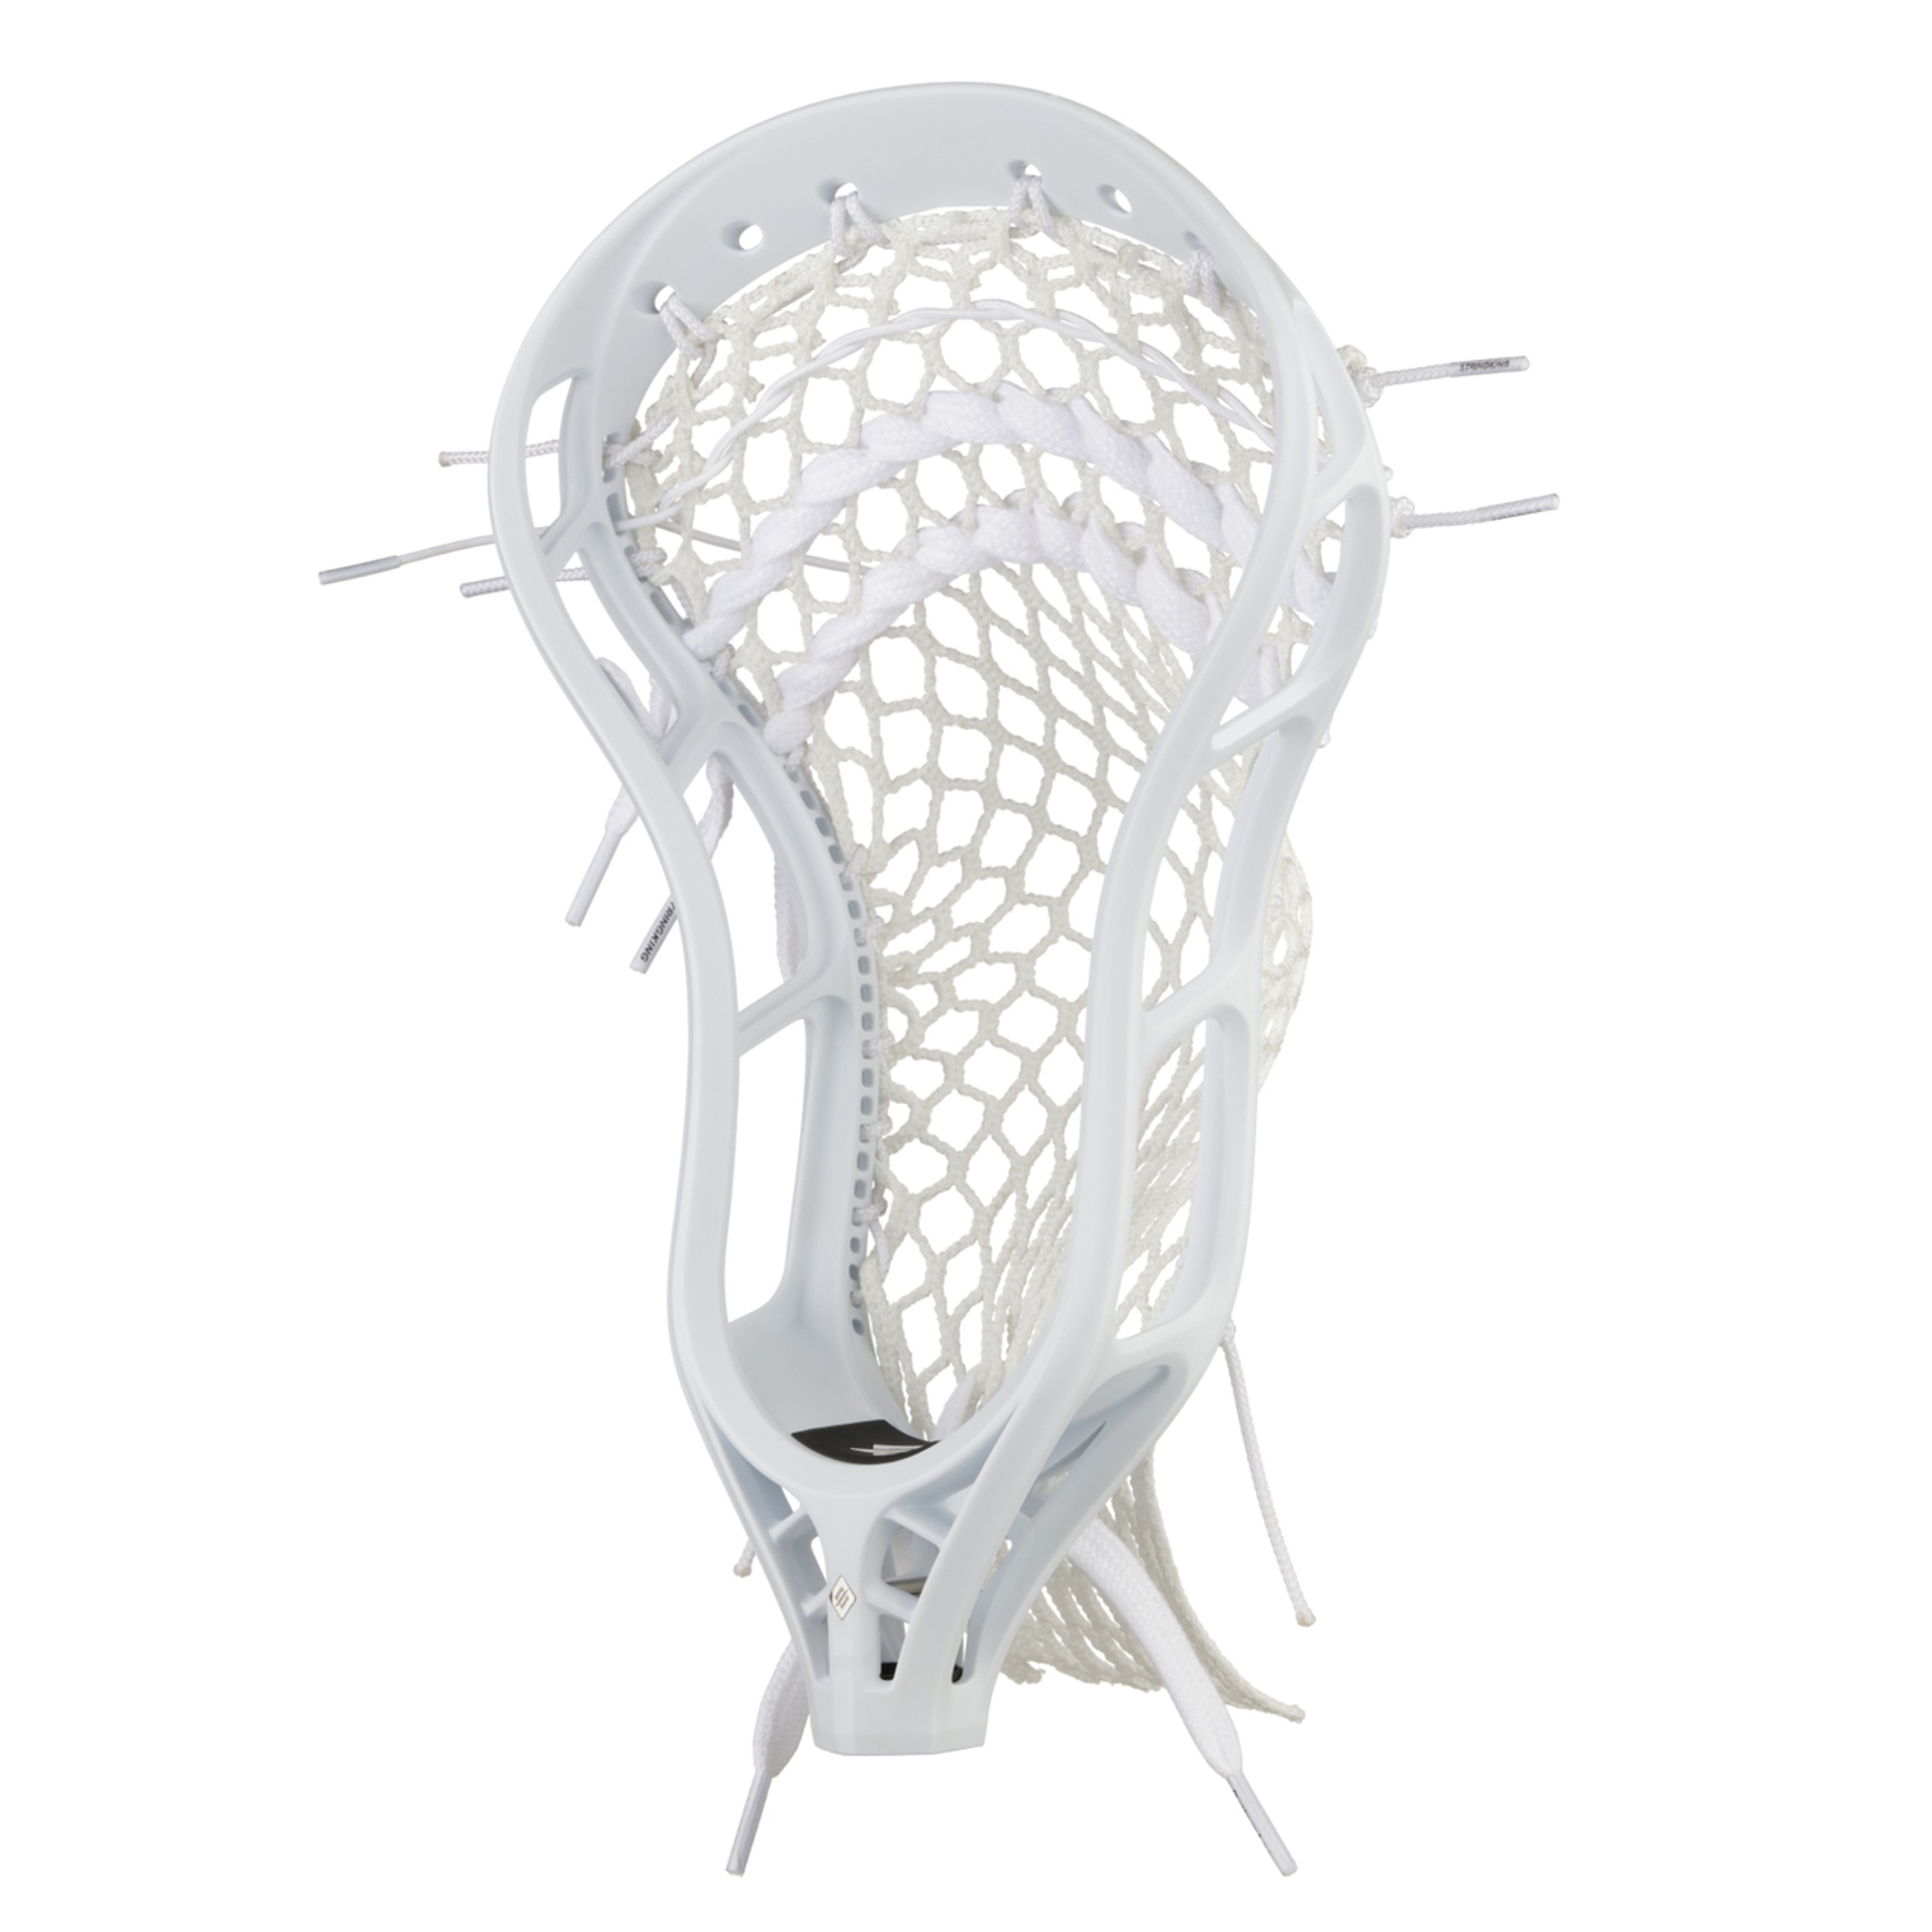 String King Mark 2V Strung Lacrosse Head